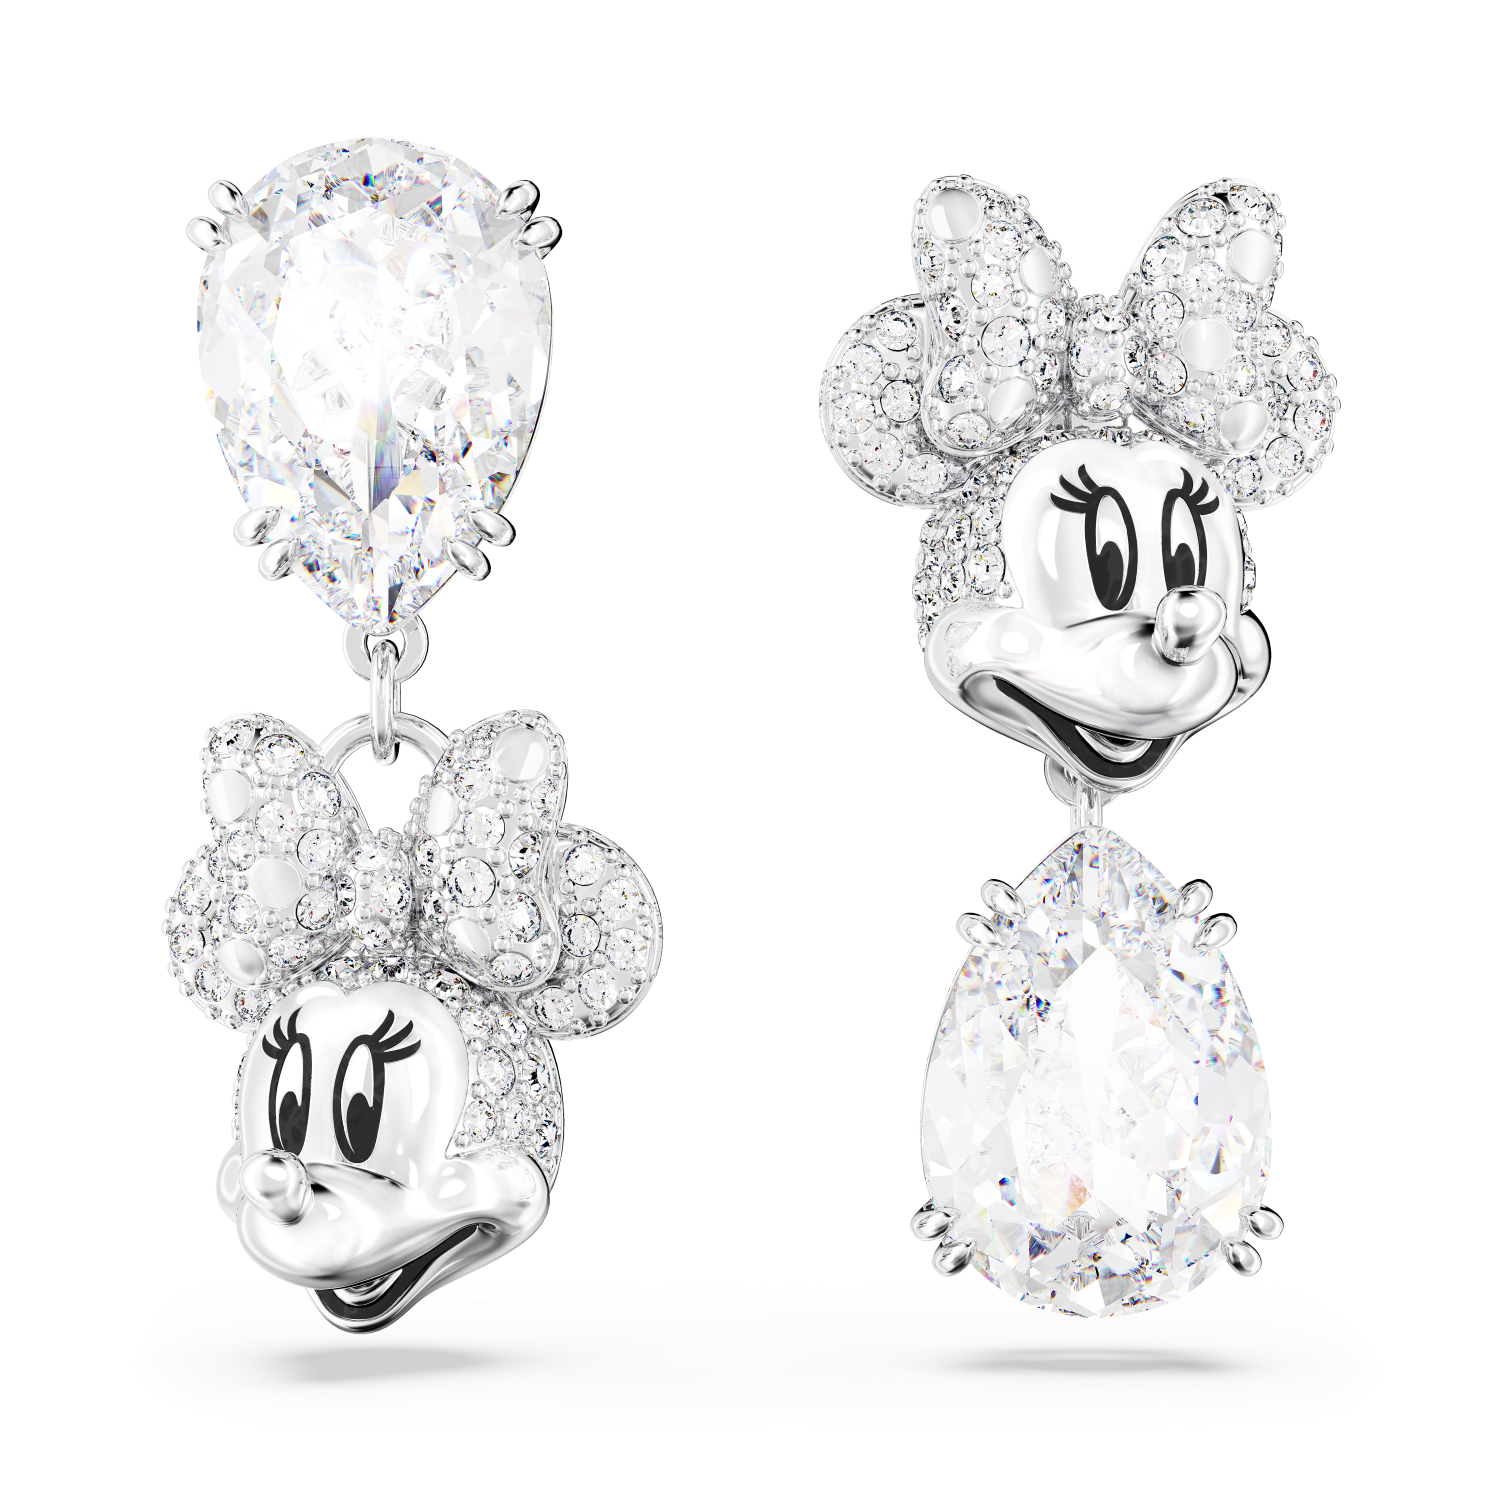 Swarovski - Orecchini pendenti Disney Minnie Mouse, Design asimmetrico, Bianchi, Placcato rodio Ref. 5668779 - SWAROVSKI